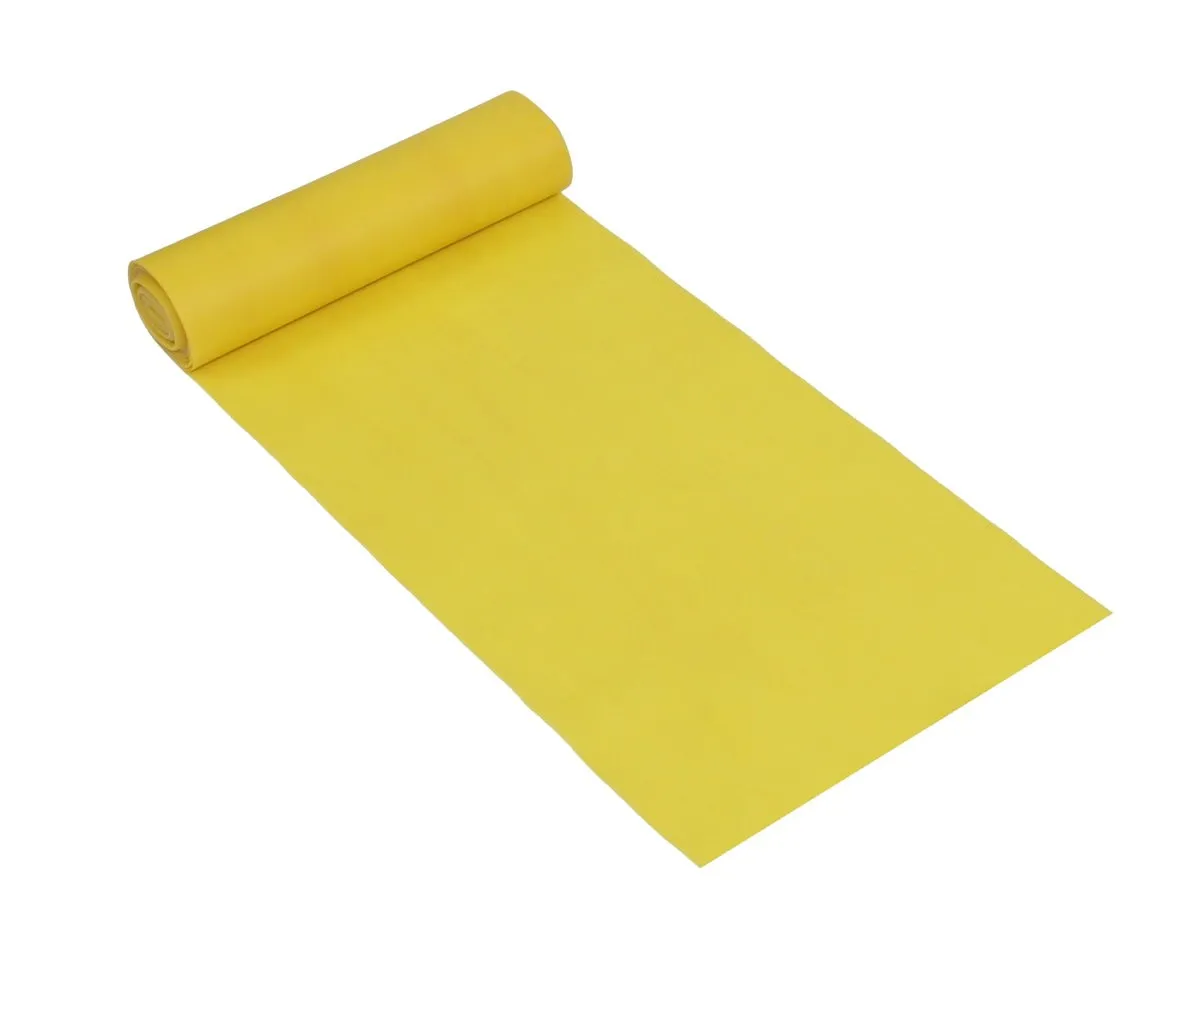 Banda para el cuerpo / banda elástica / banda para ejercicios 5.5 metros amarillo claro